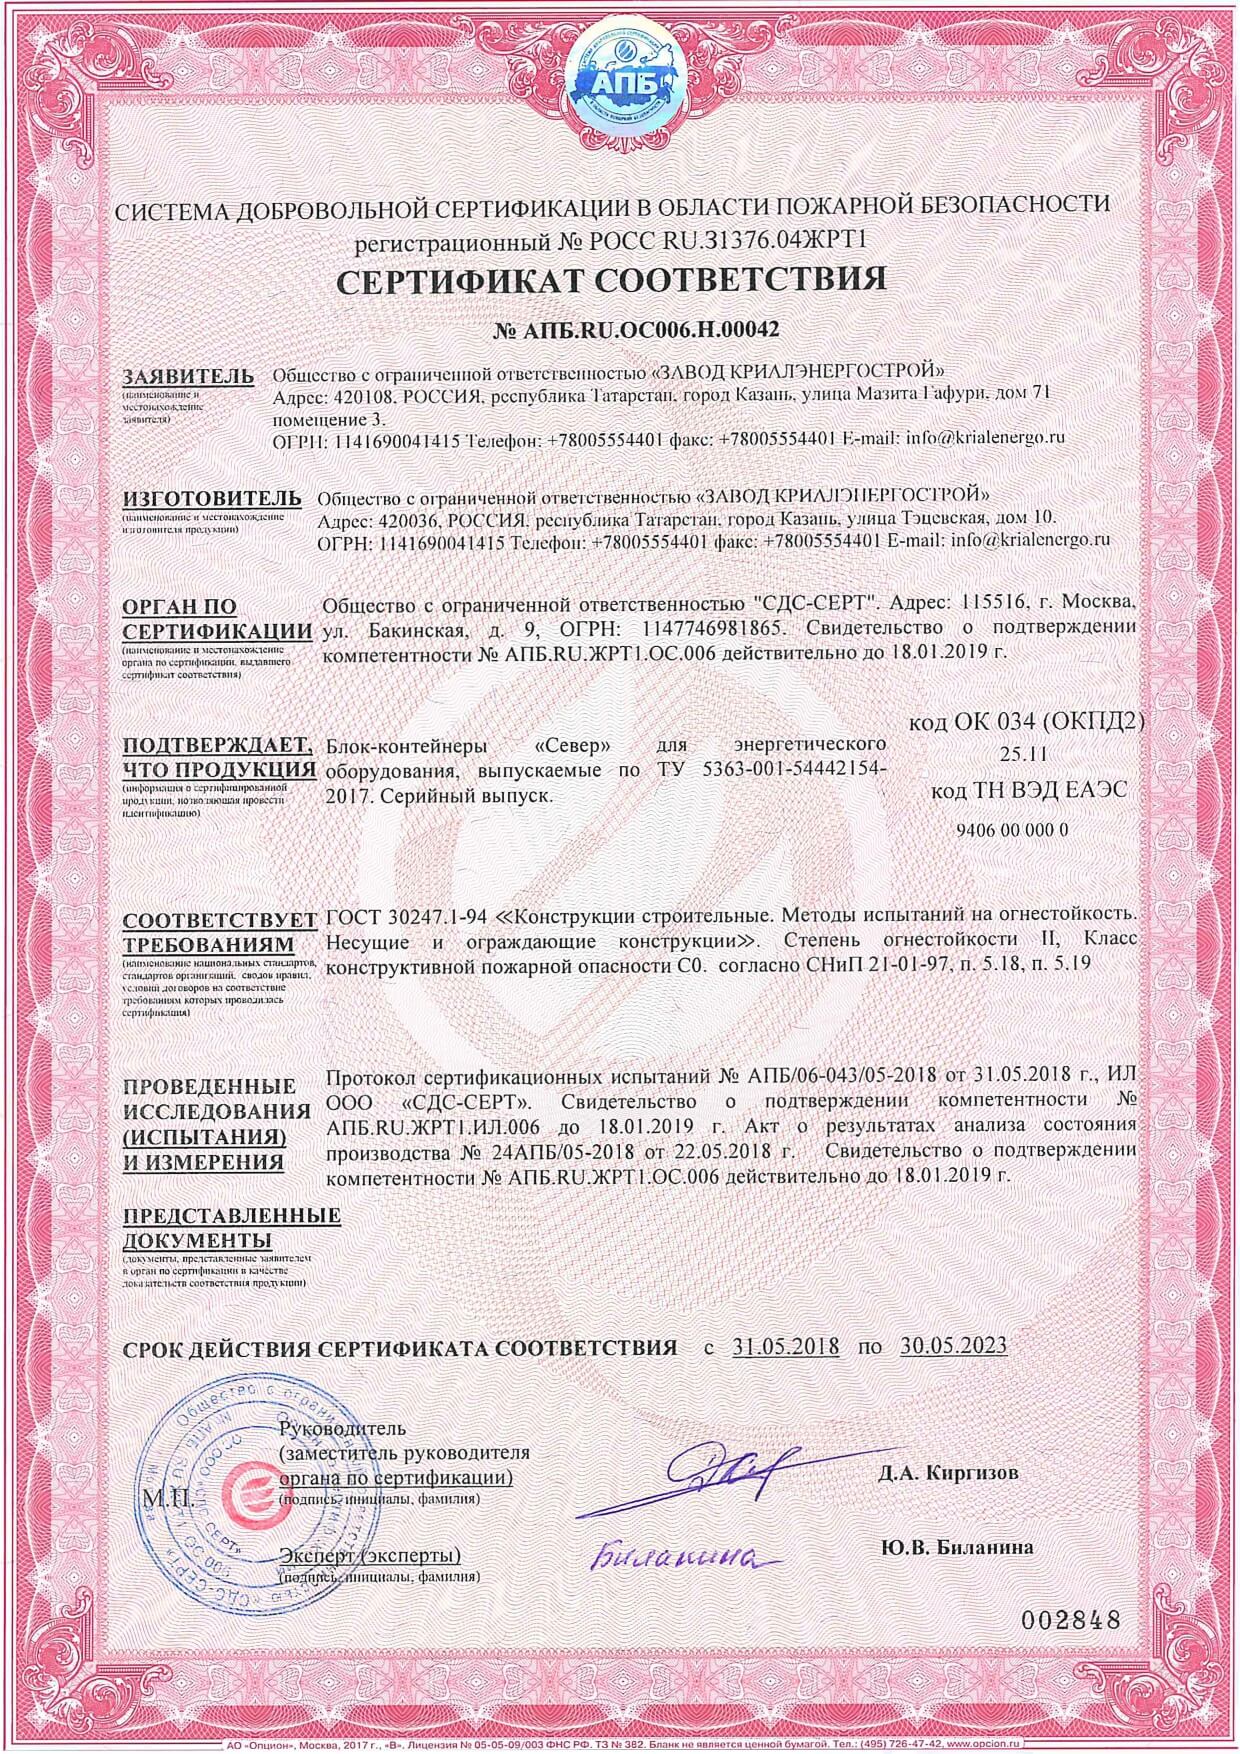 Сертификат соответствия в области пожарной безопасности. Класс конструктивной пожарной опасности С0